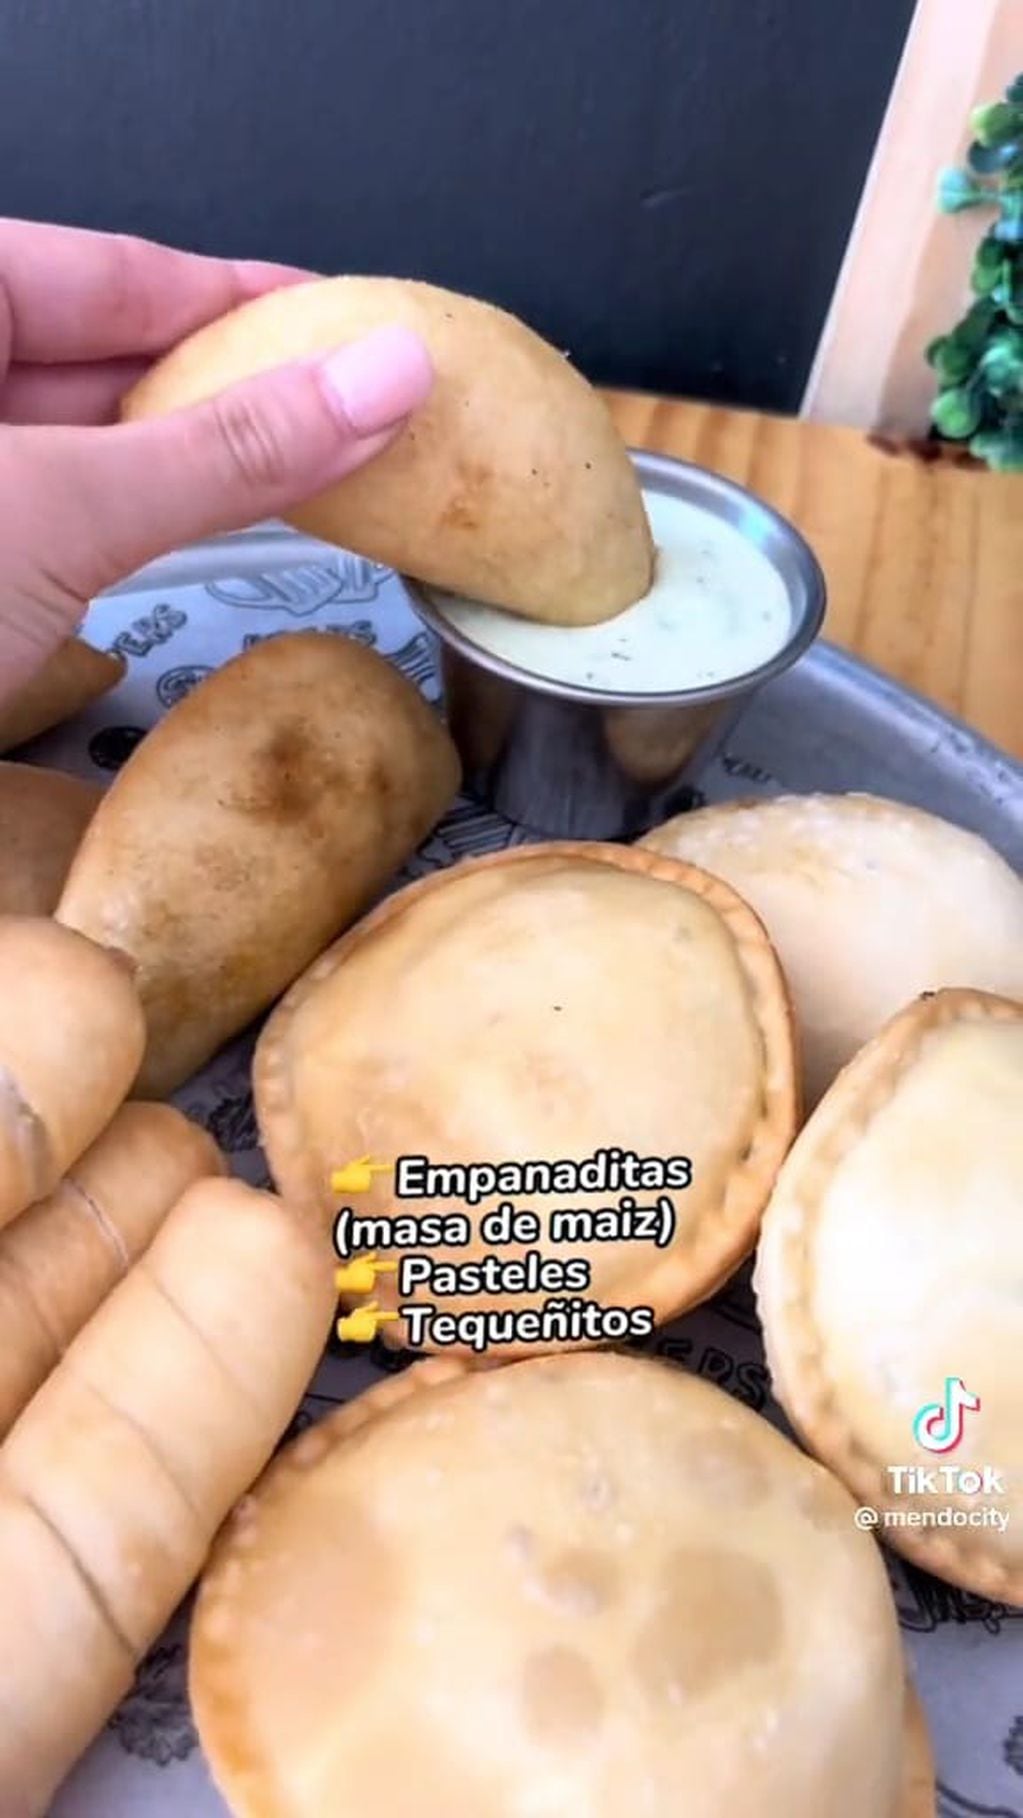 "Empanadas de maza de maíz" venezolanas.